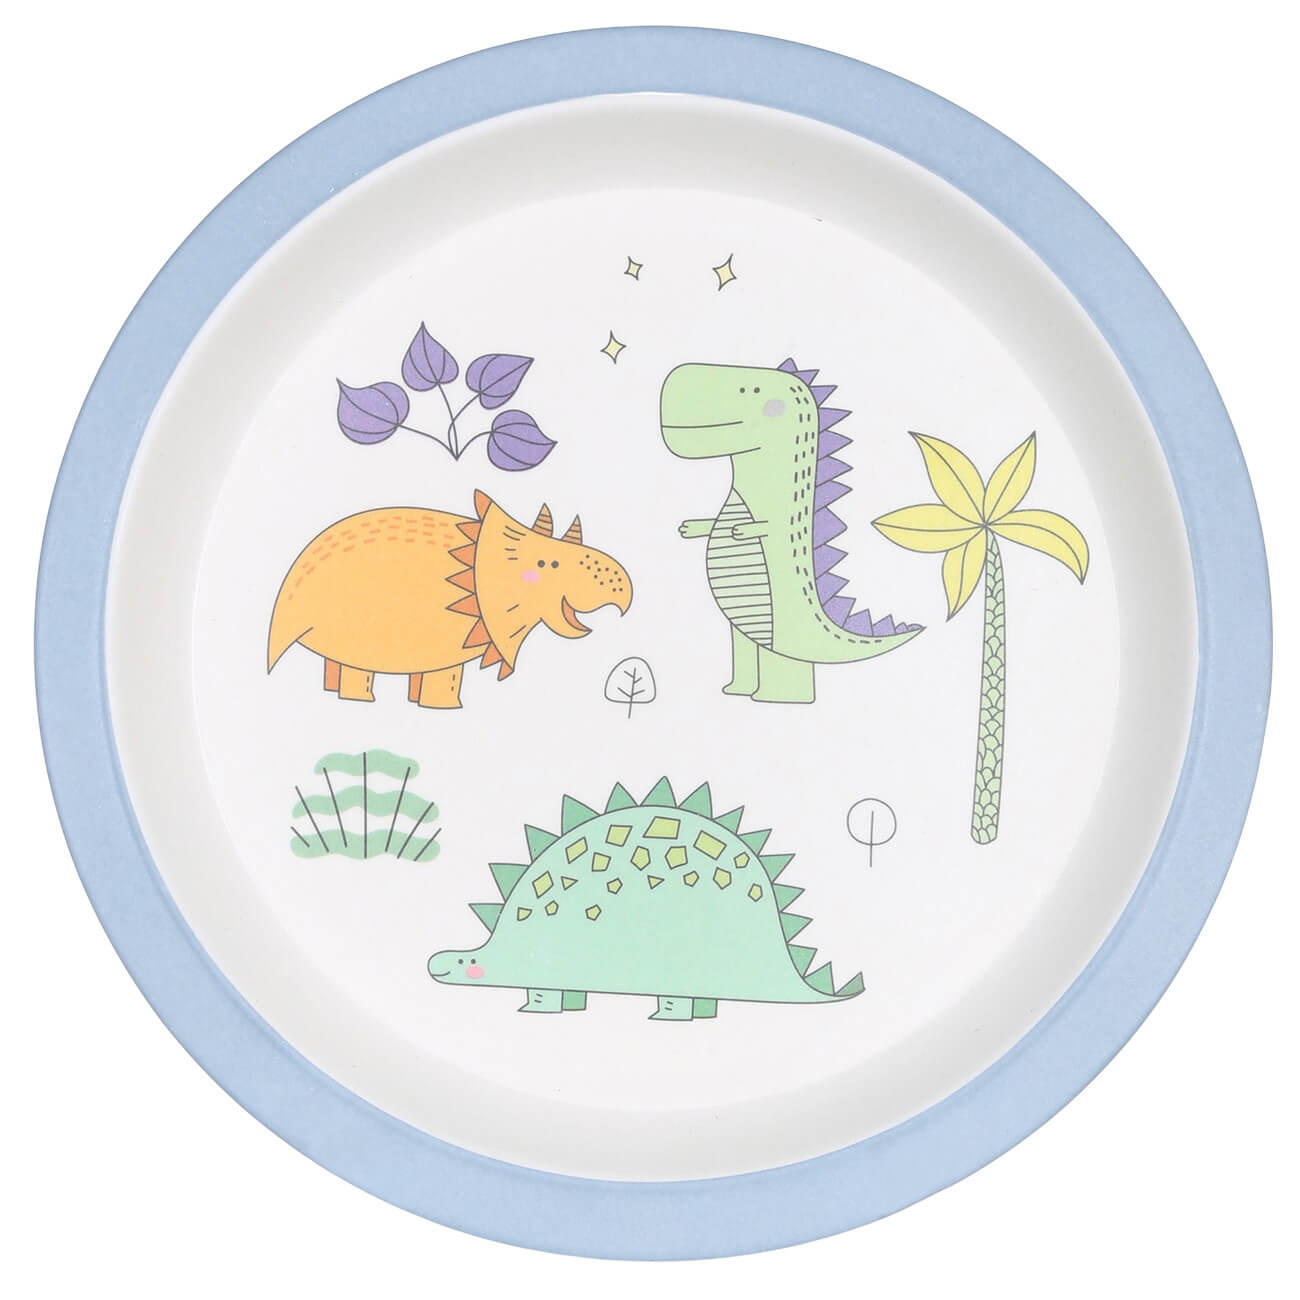 Тарелка закусочная, детская, 21 см, бамбук, голубая, Динозавр, Dino тарелка суповая детская 15 см бамбук розово мятная единорог и звезды unicorn